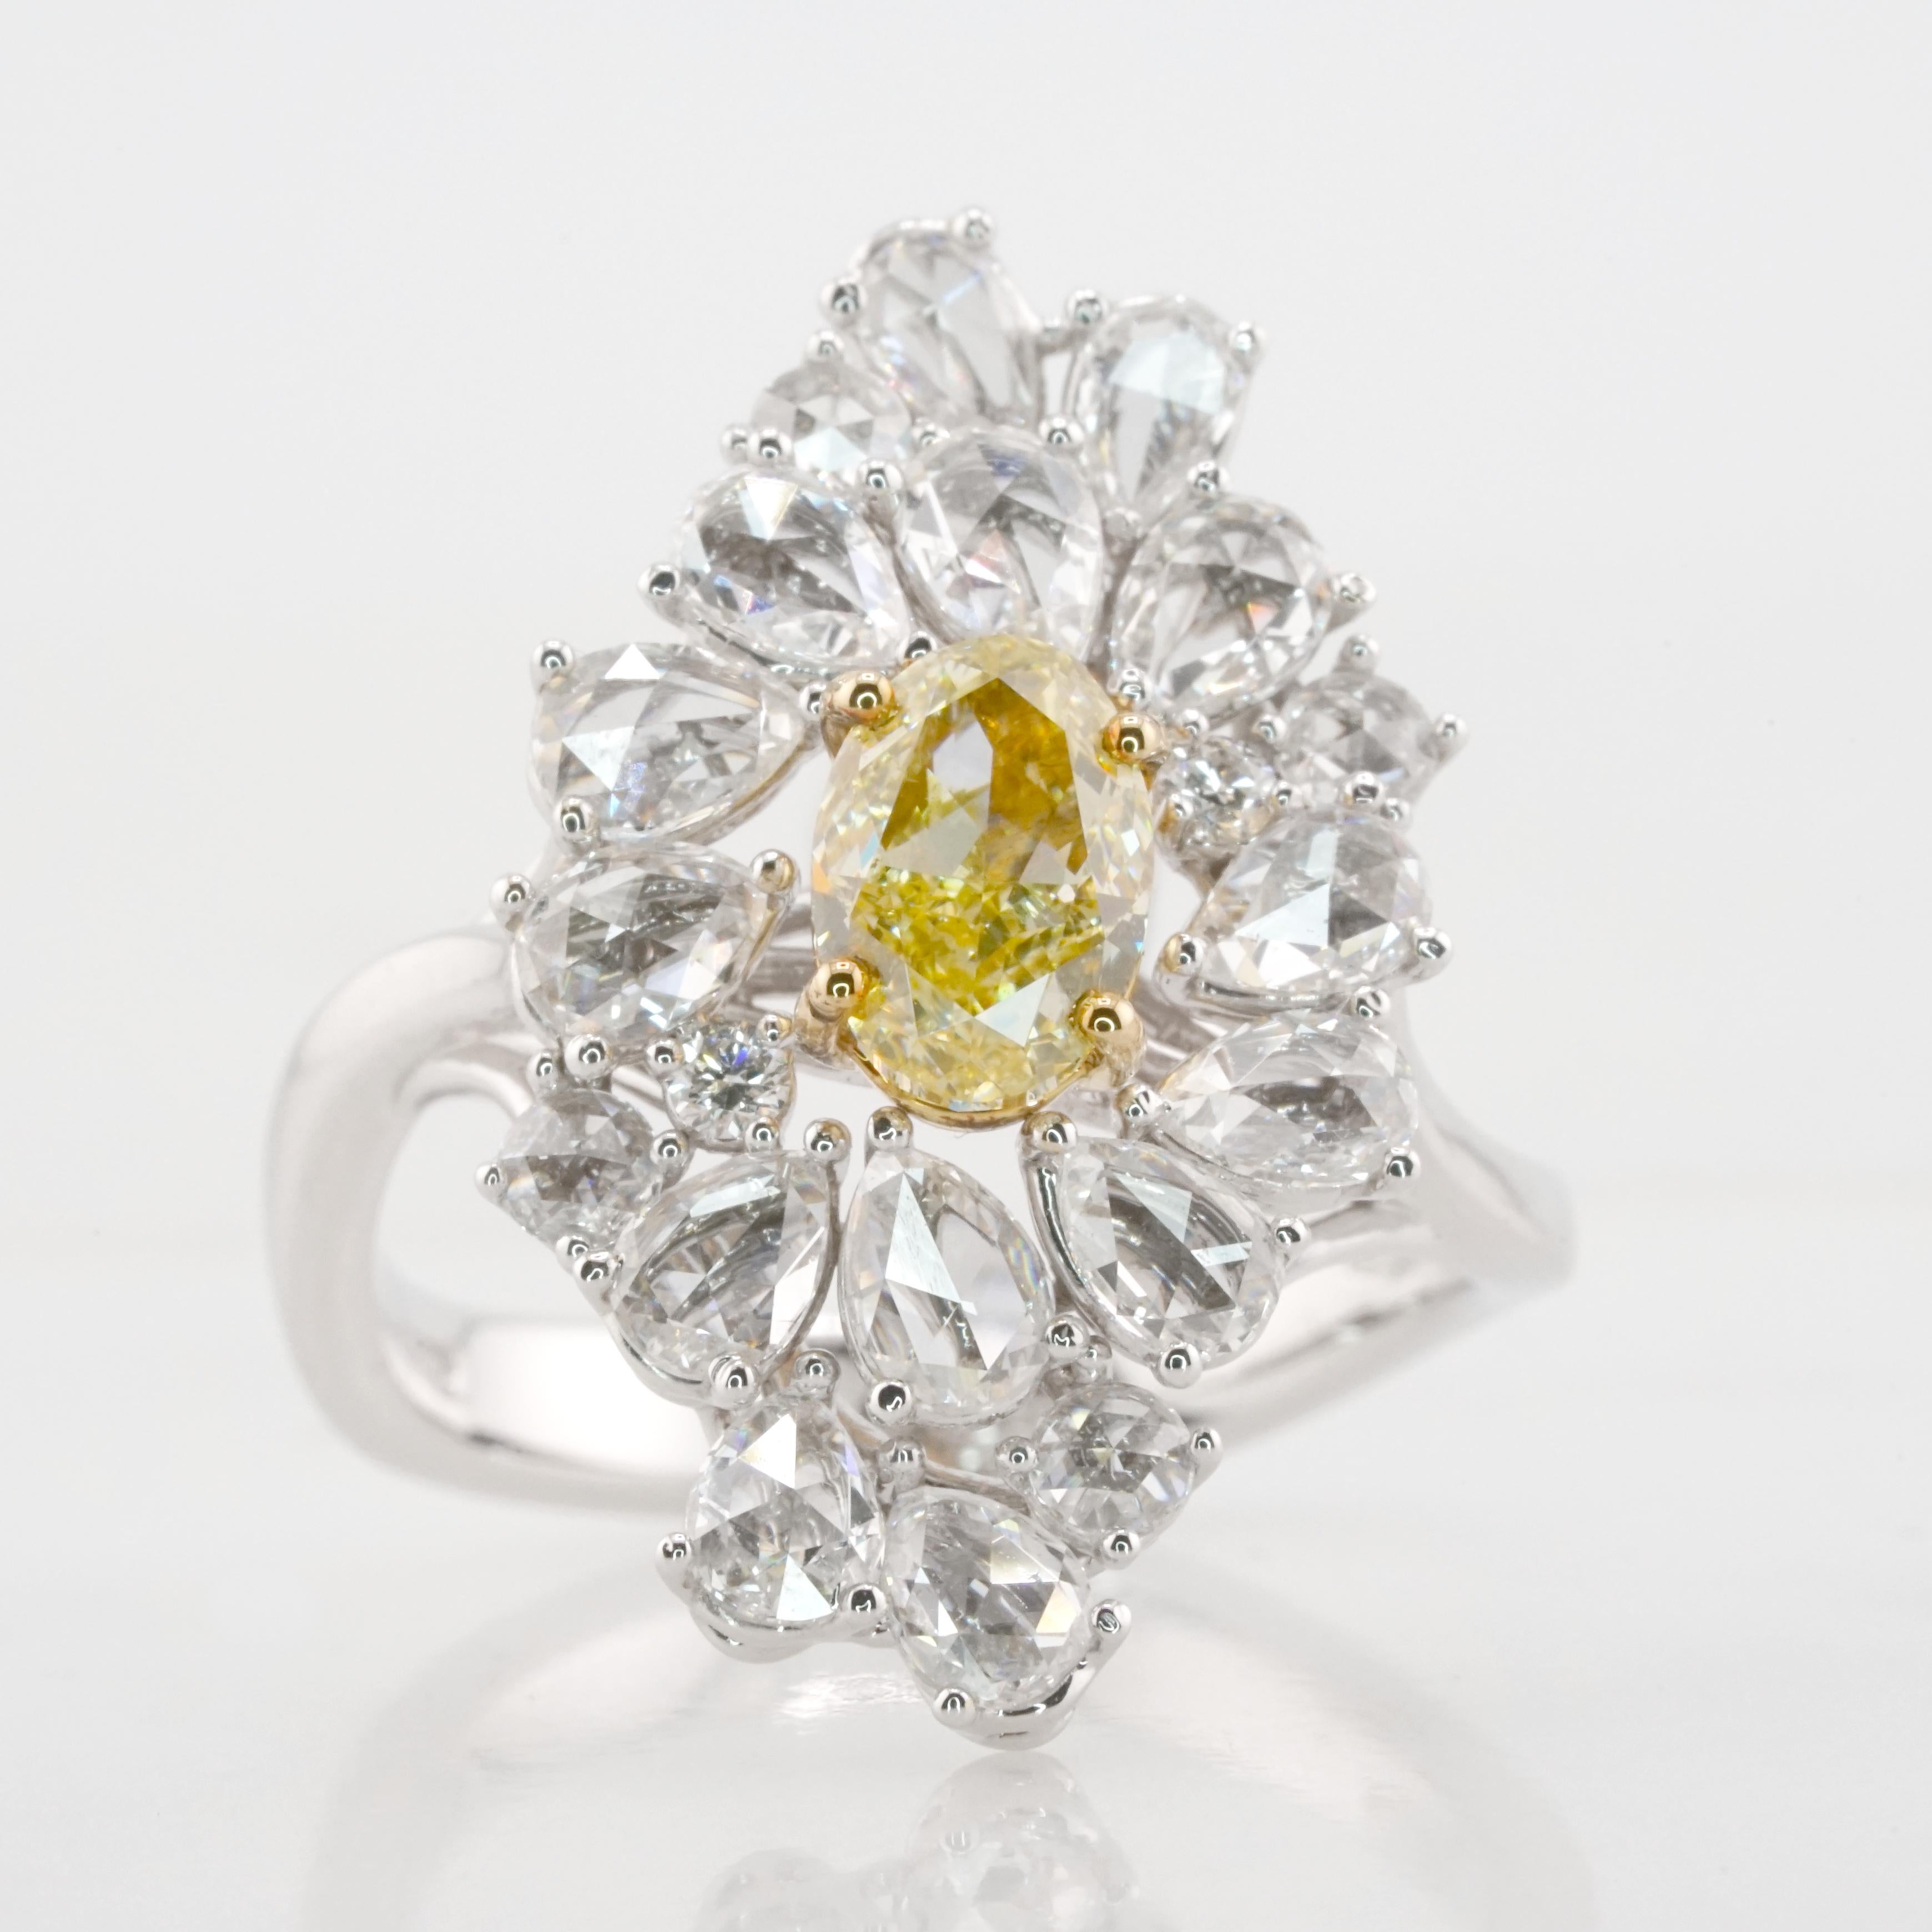 Diese erstaunliche Kreation von Antinori Di Sanpietro zeichnet sich durch einen ovalen, gelben Fancy-Diamanten von 1,13 Karat aus.
Der Hauptstein ist vom GIA, dem wichtigsten gemmologischen Labor für Diamanten, zertifiziert. Er ist ein Fancy-Gelb